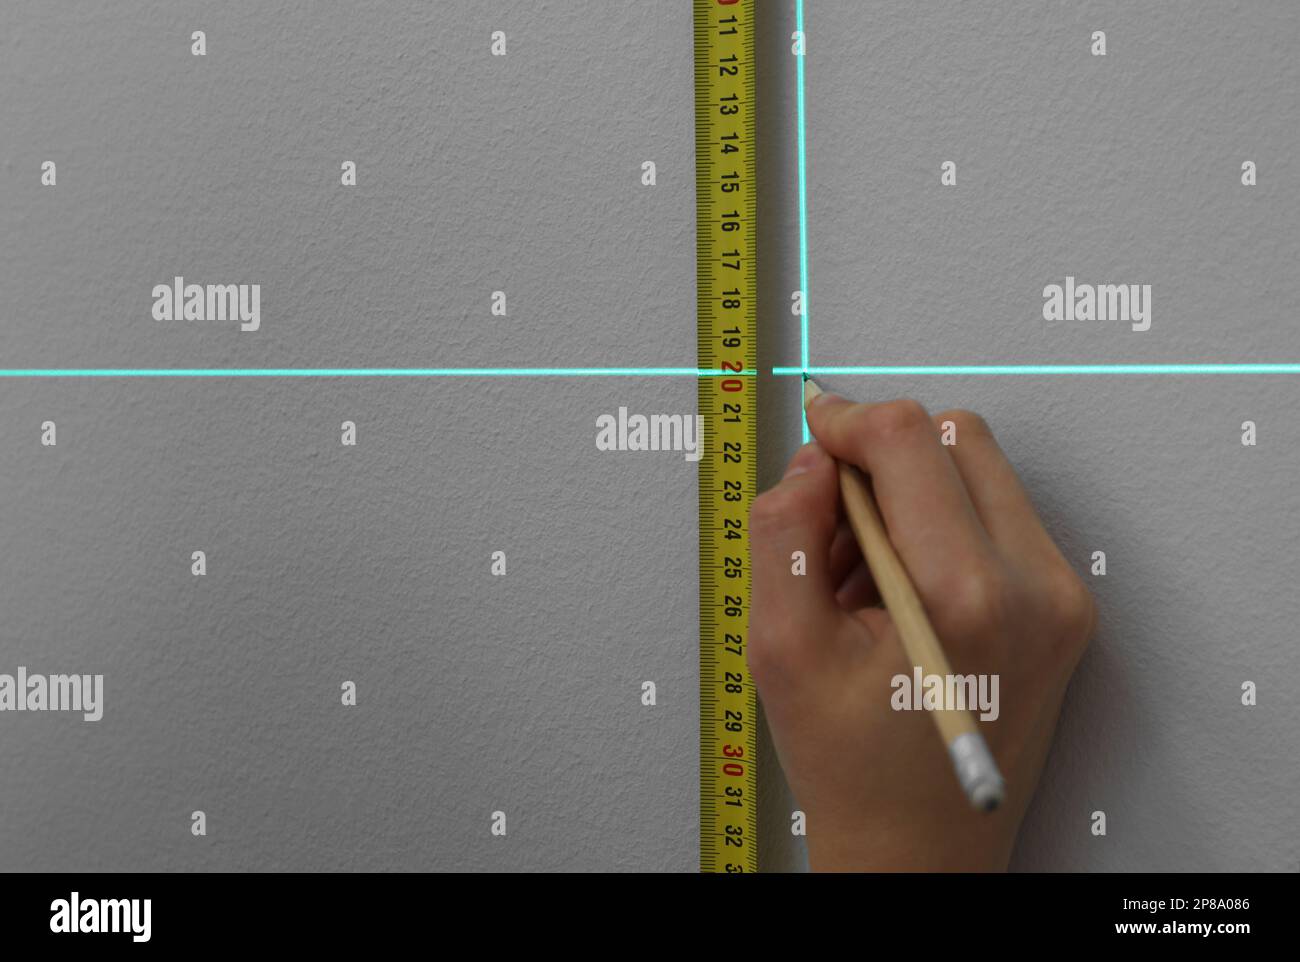 Frau, die Kreuzlinienlaser-Nivelliergerät, Klebeband und Bleistift für genaue Messungen an grauen Wänden und Nahaufnahmen verwendet Stockfoto